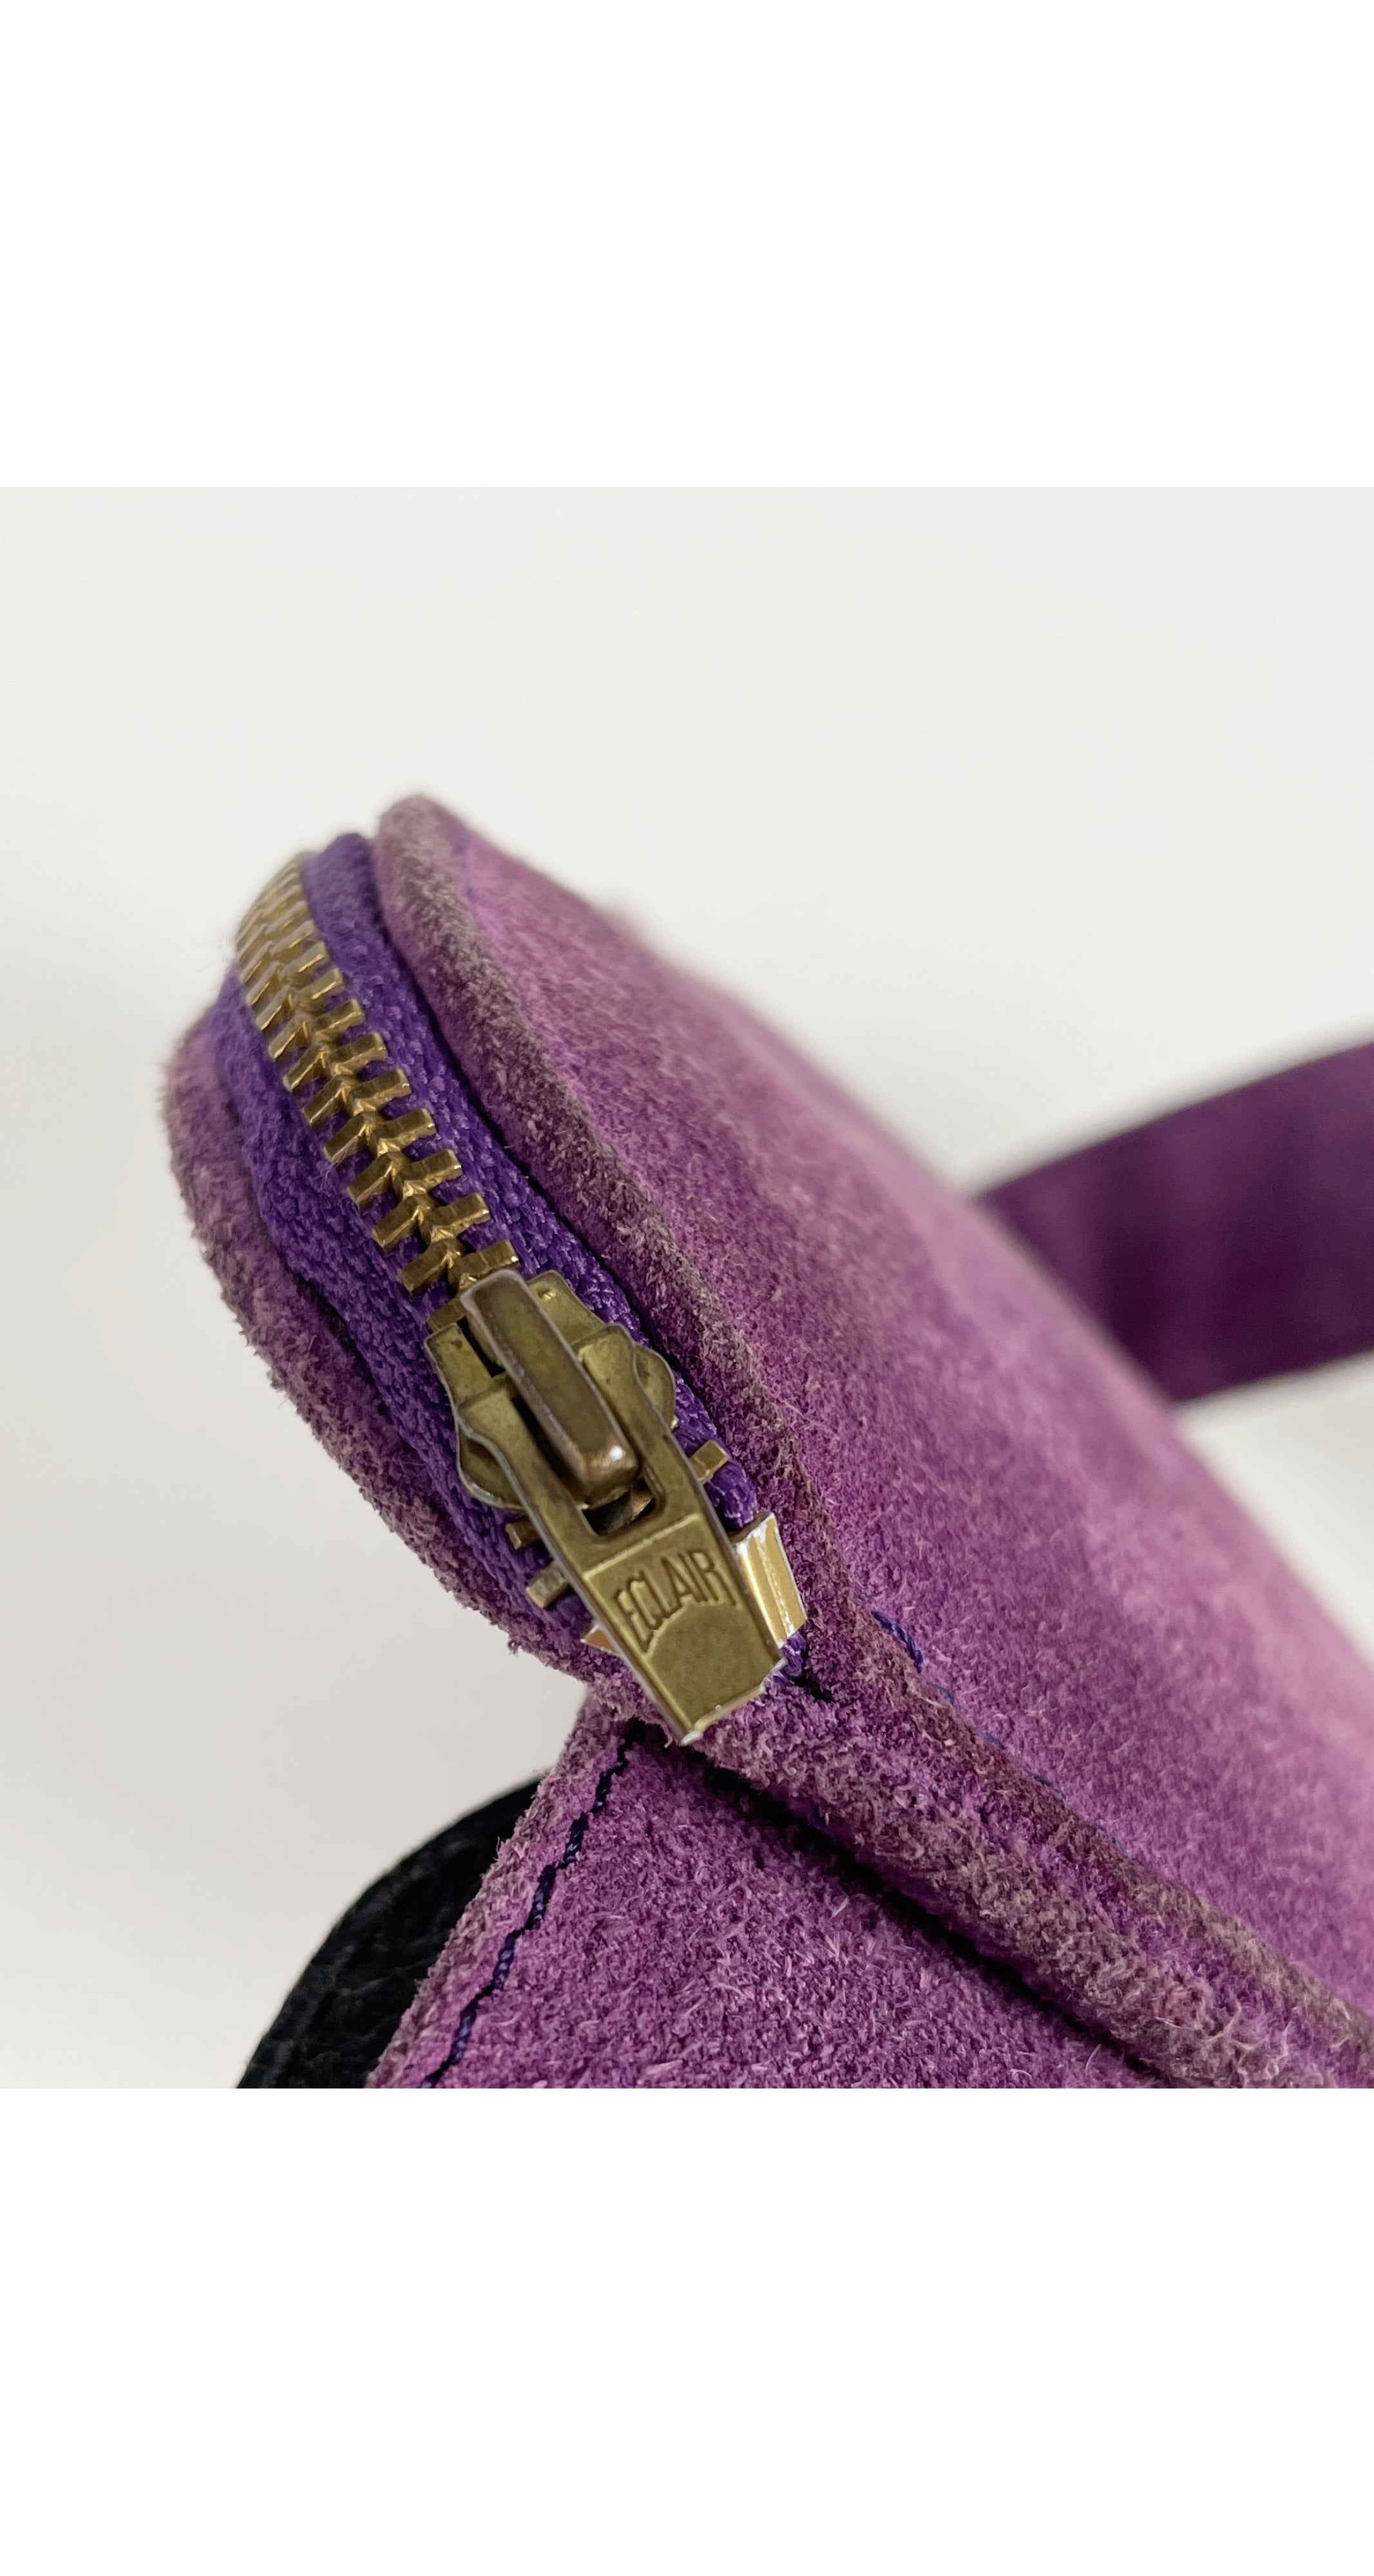 1980s Heart-Shaped Purple Suede Belt Bag